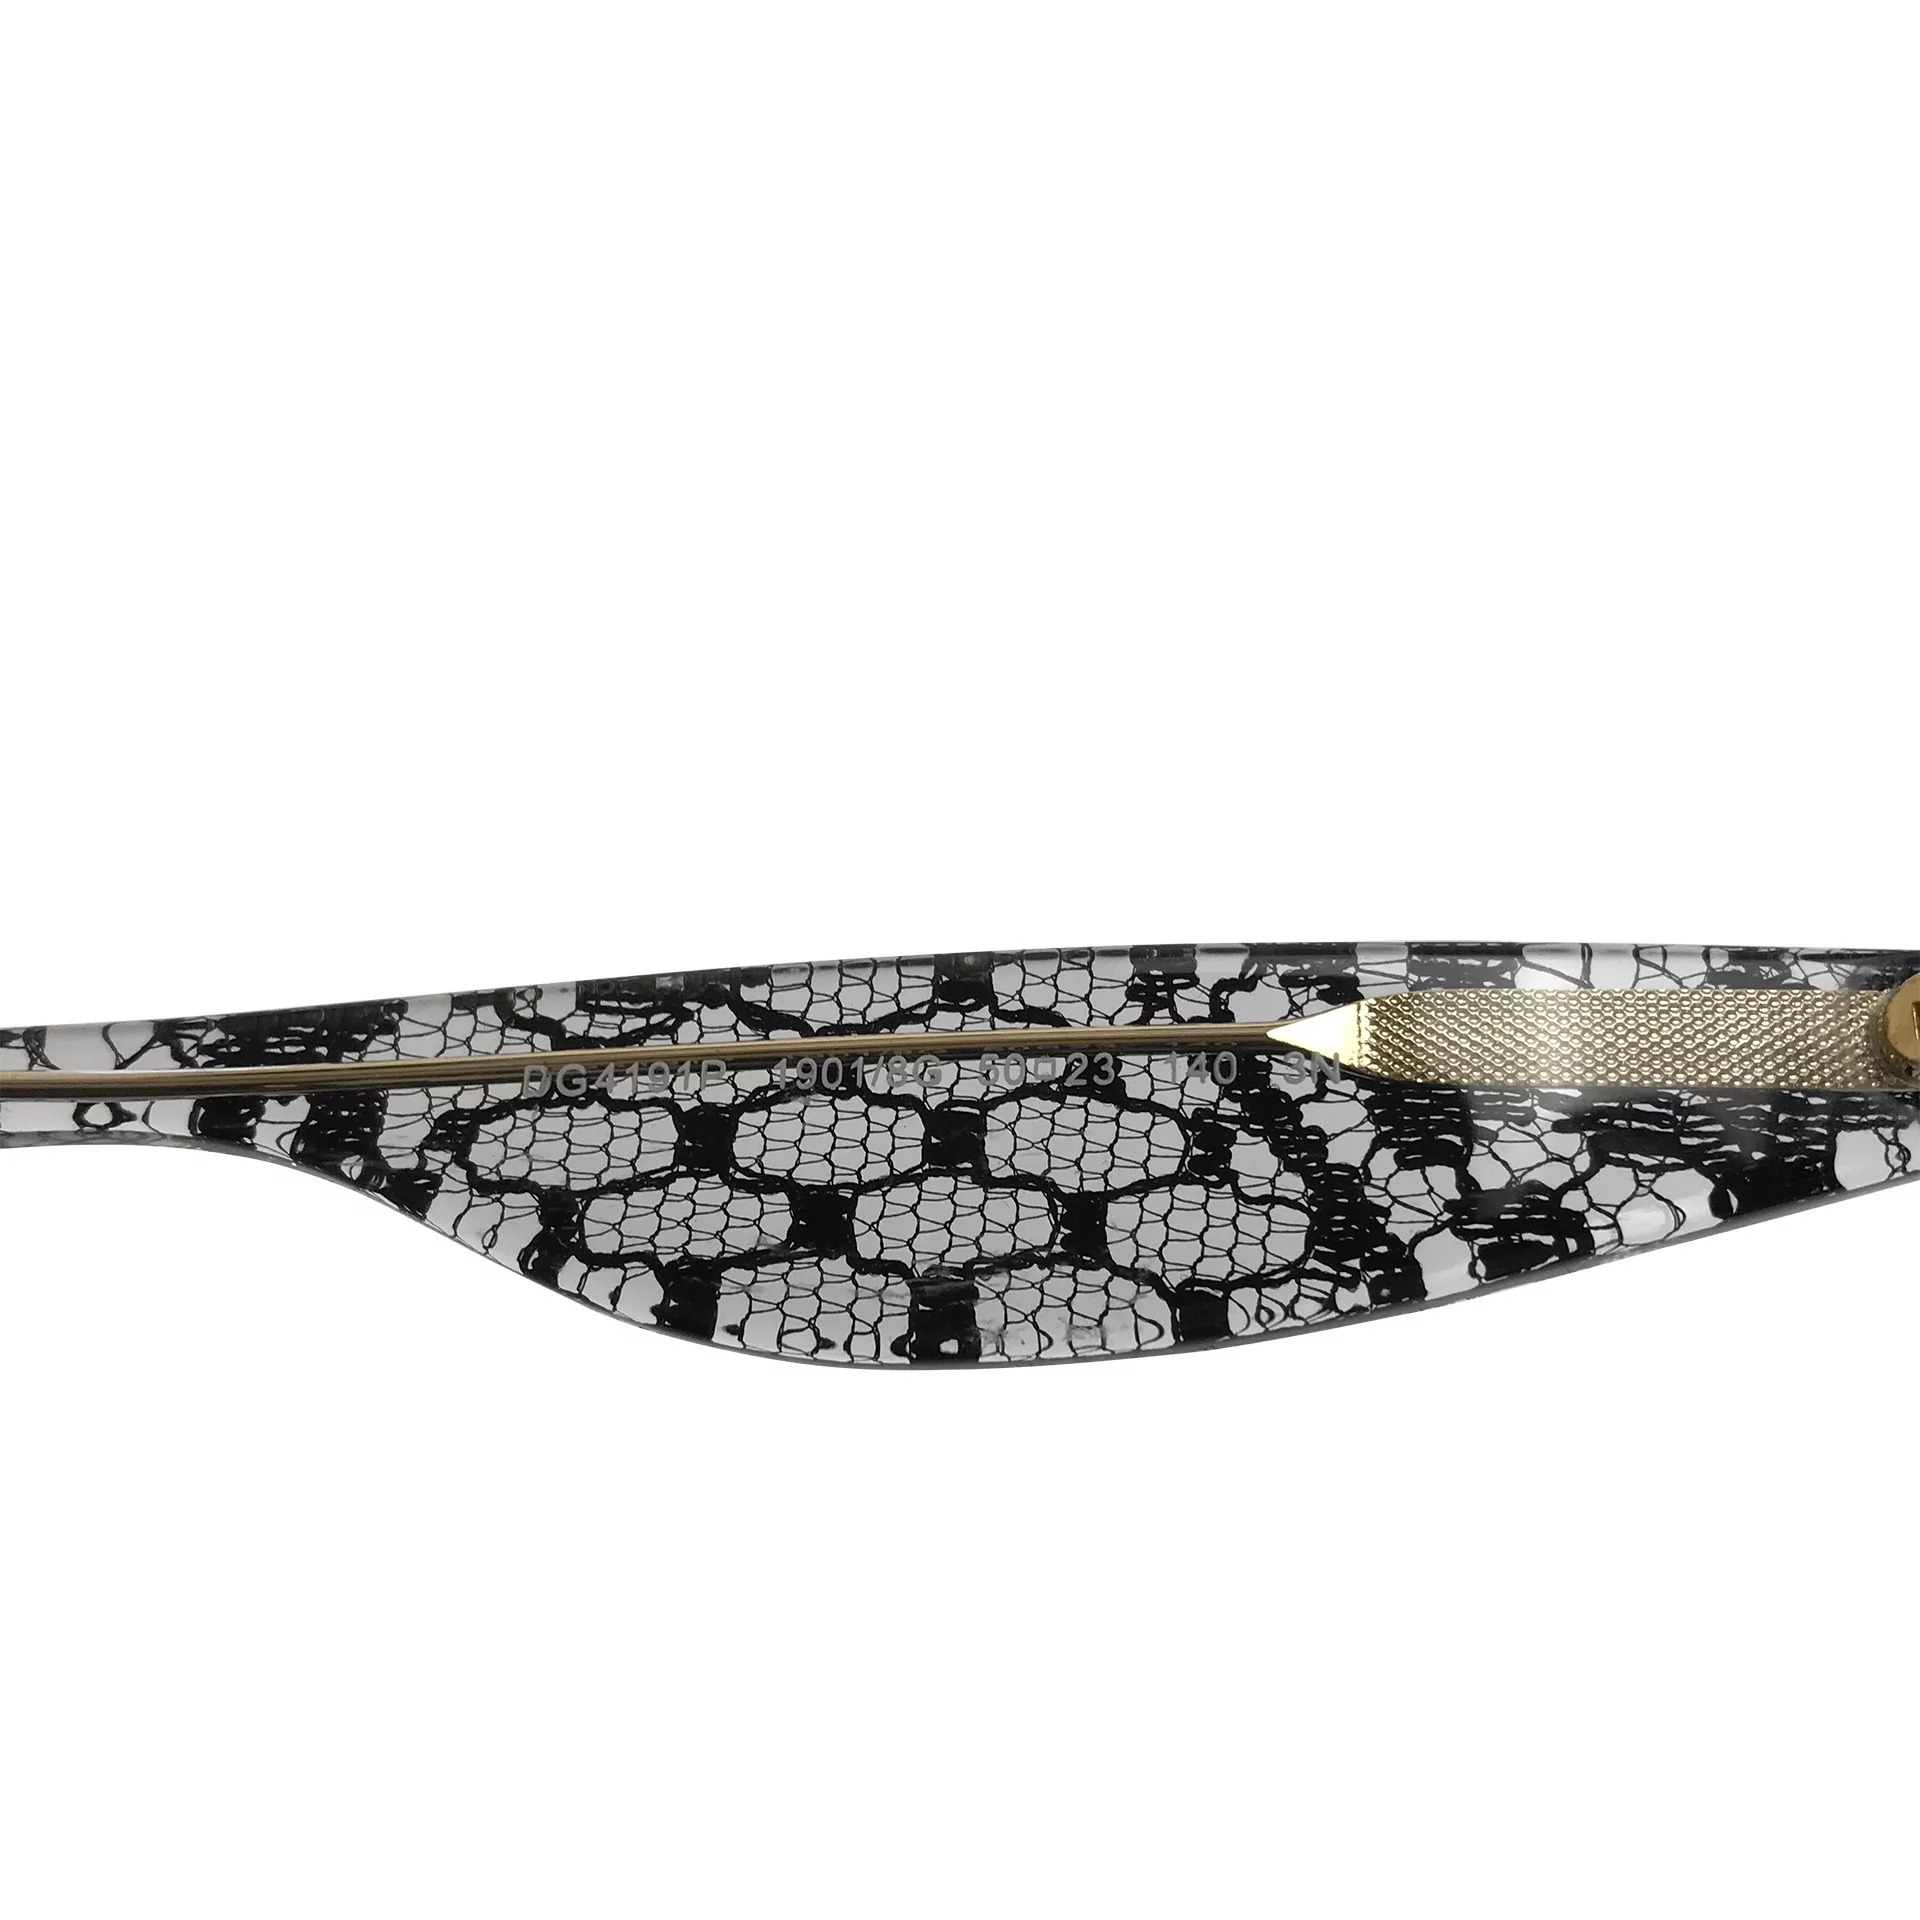 Óculos de Sol Dolce & Gabbana - DG 4191 P